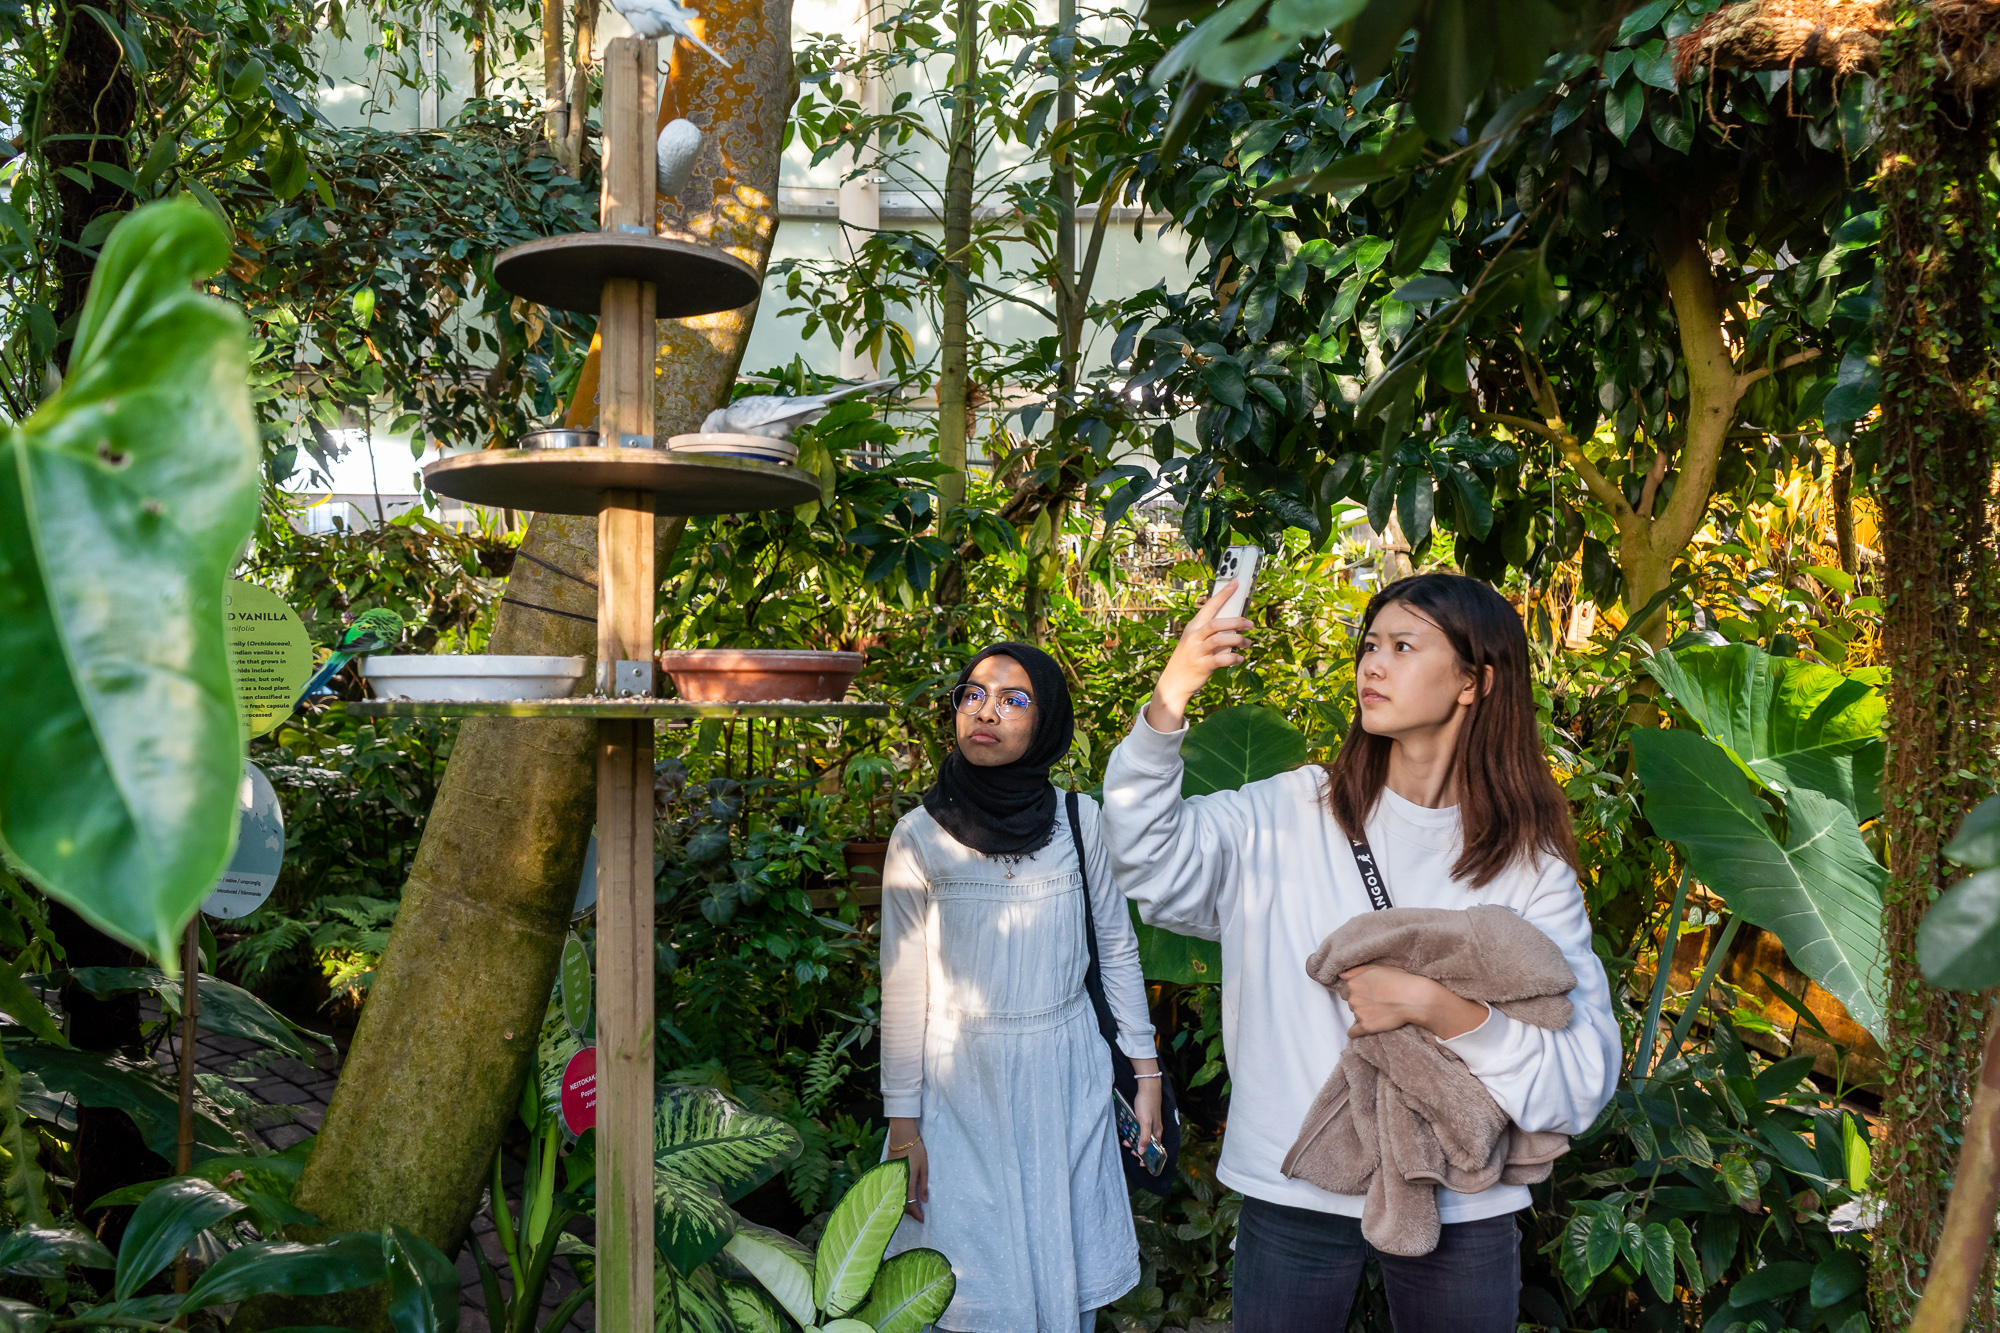 Kaksi vaihto-opiskelijaa katsomassa ja kuvaamassa kasvihuoneiden lintulaudalla ruokailevia lintuja.